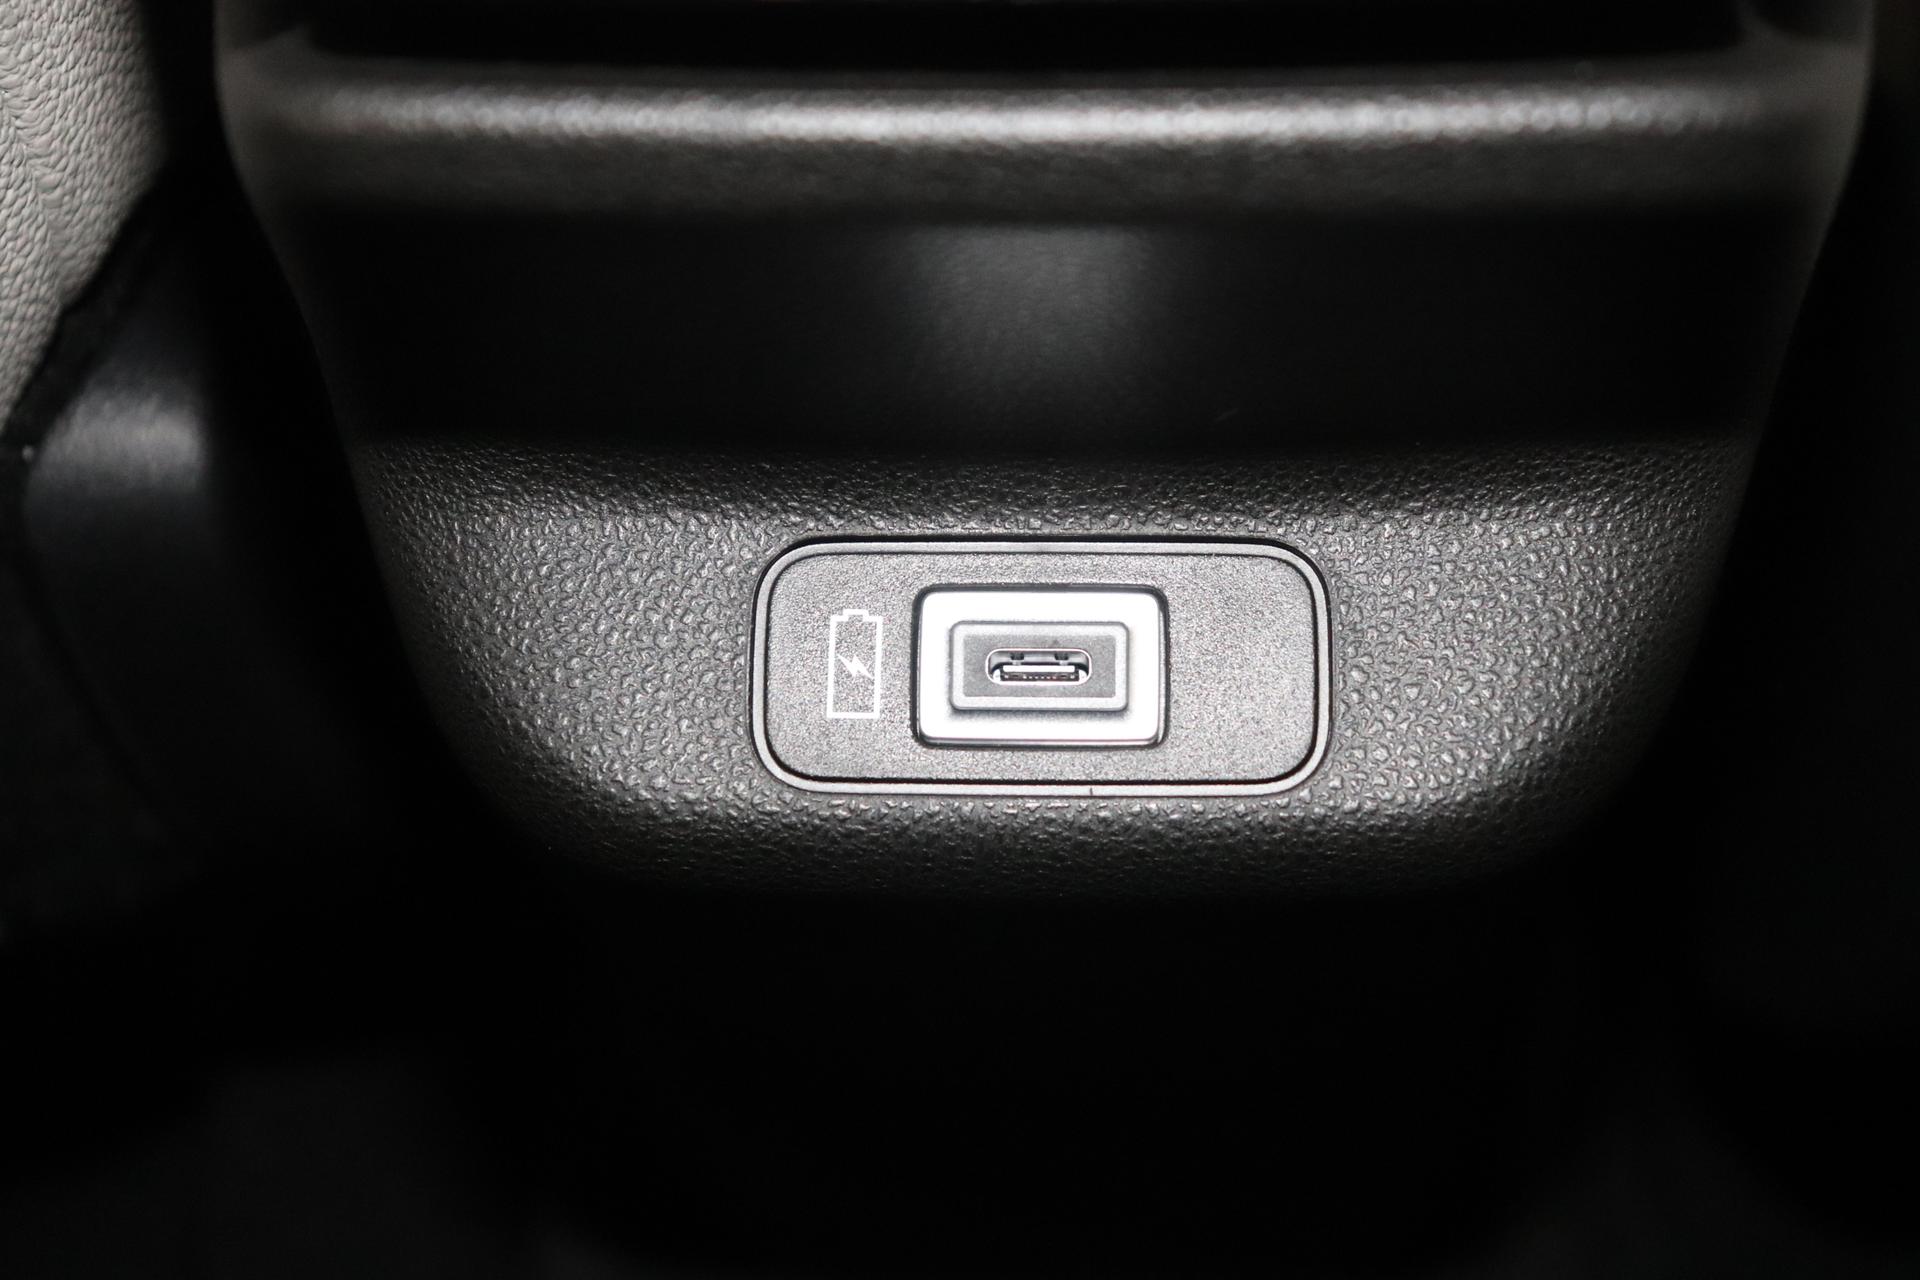 Fiat 600e RED 54kWh 115kW, Klimaautomatik, Ambiente Licht inkl. Color  Therapy, 10,25 Infotainment, AppleCarPlay&Android Auto, Parksensoren  hinten, Spurhalteassistent, LED Scheinwerfer, Nebelscheinwerfer, 16  Stahlfelgen, uvm. Reimport EU-Neuwagen